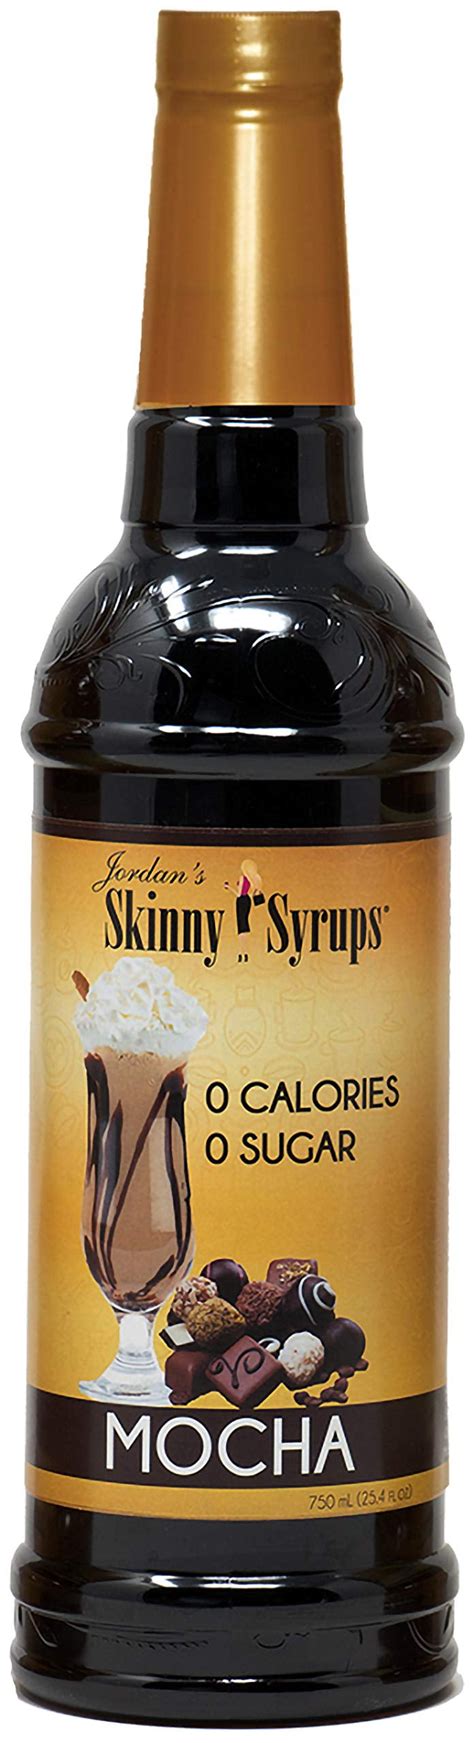 Jordans Skinny Syrups Sugar Free Mocha Coffee Syrup Healthy